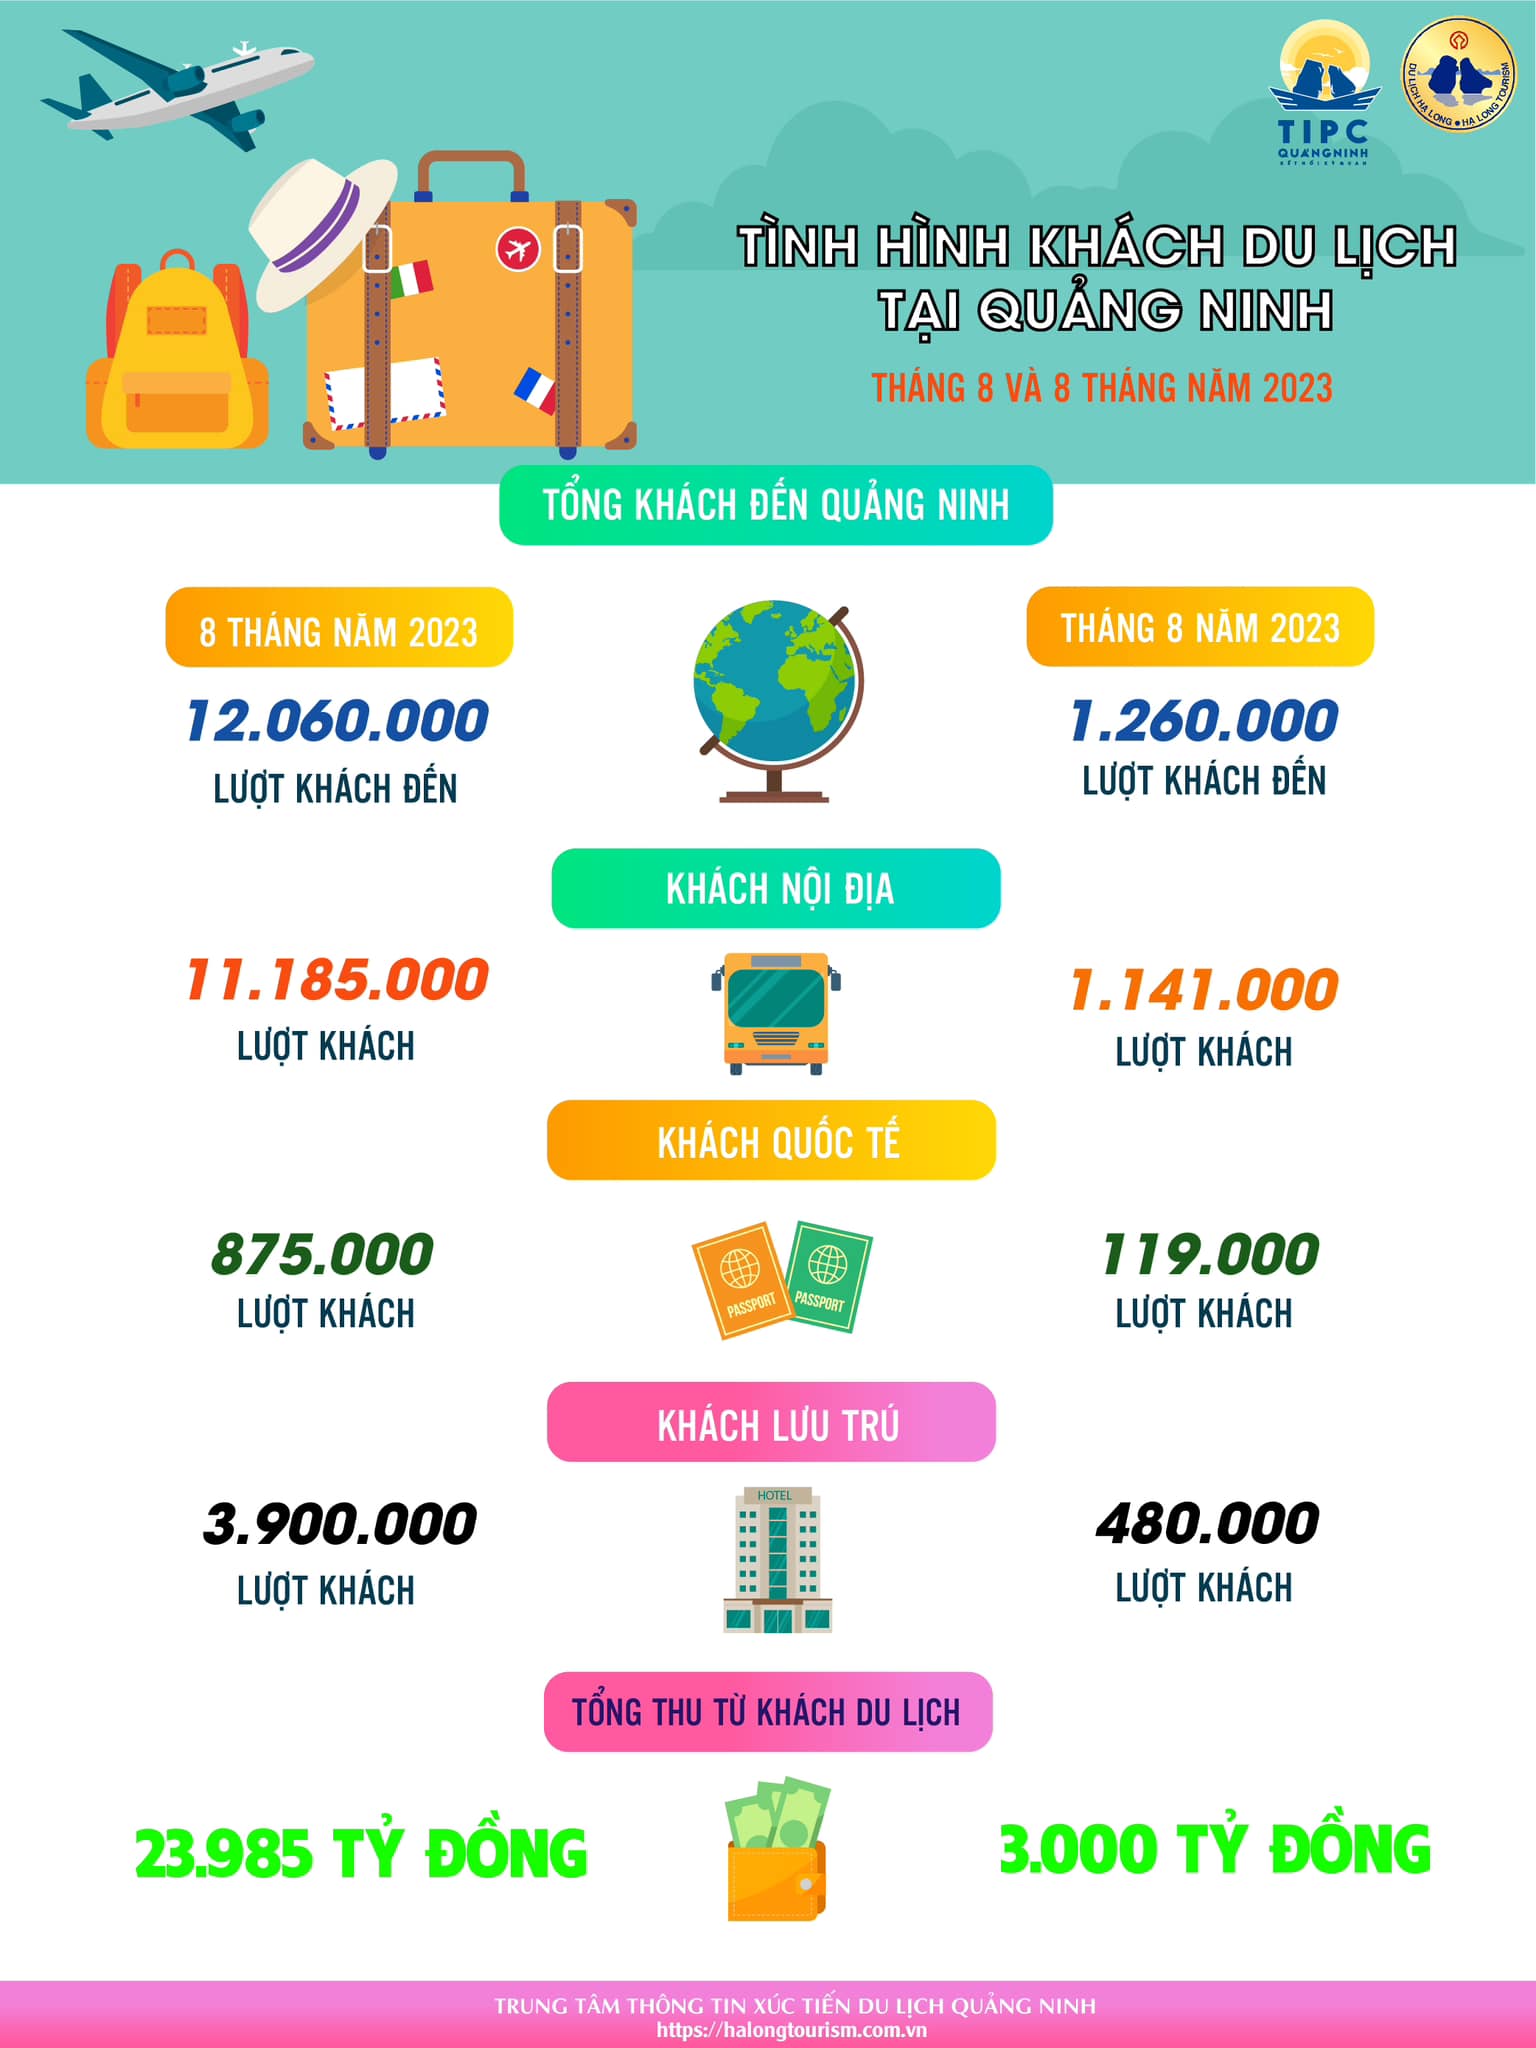 [Infographic] Tình hình khách du lịch tại Quảng Ninh tháng 8 và 8 tháng năm 2023